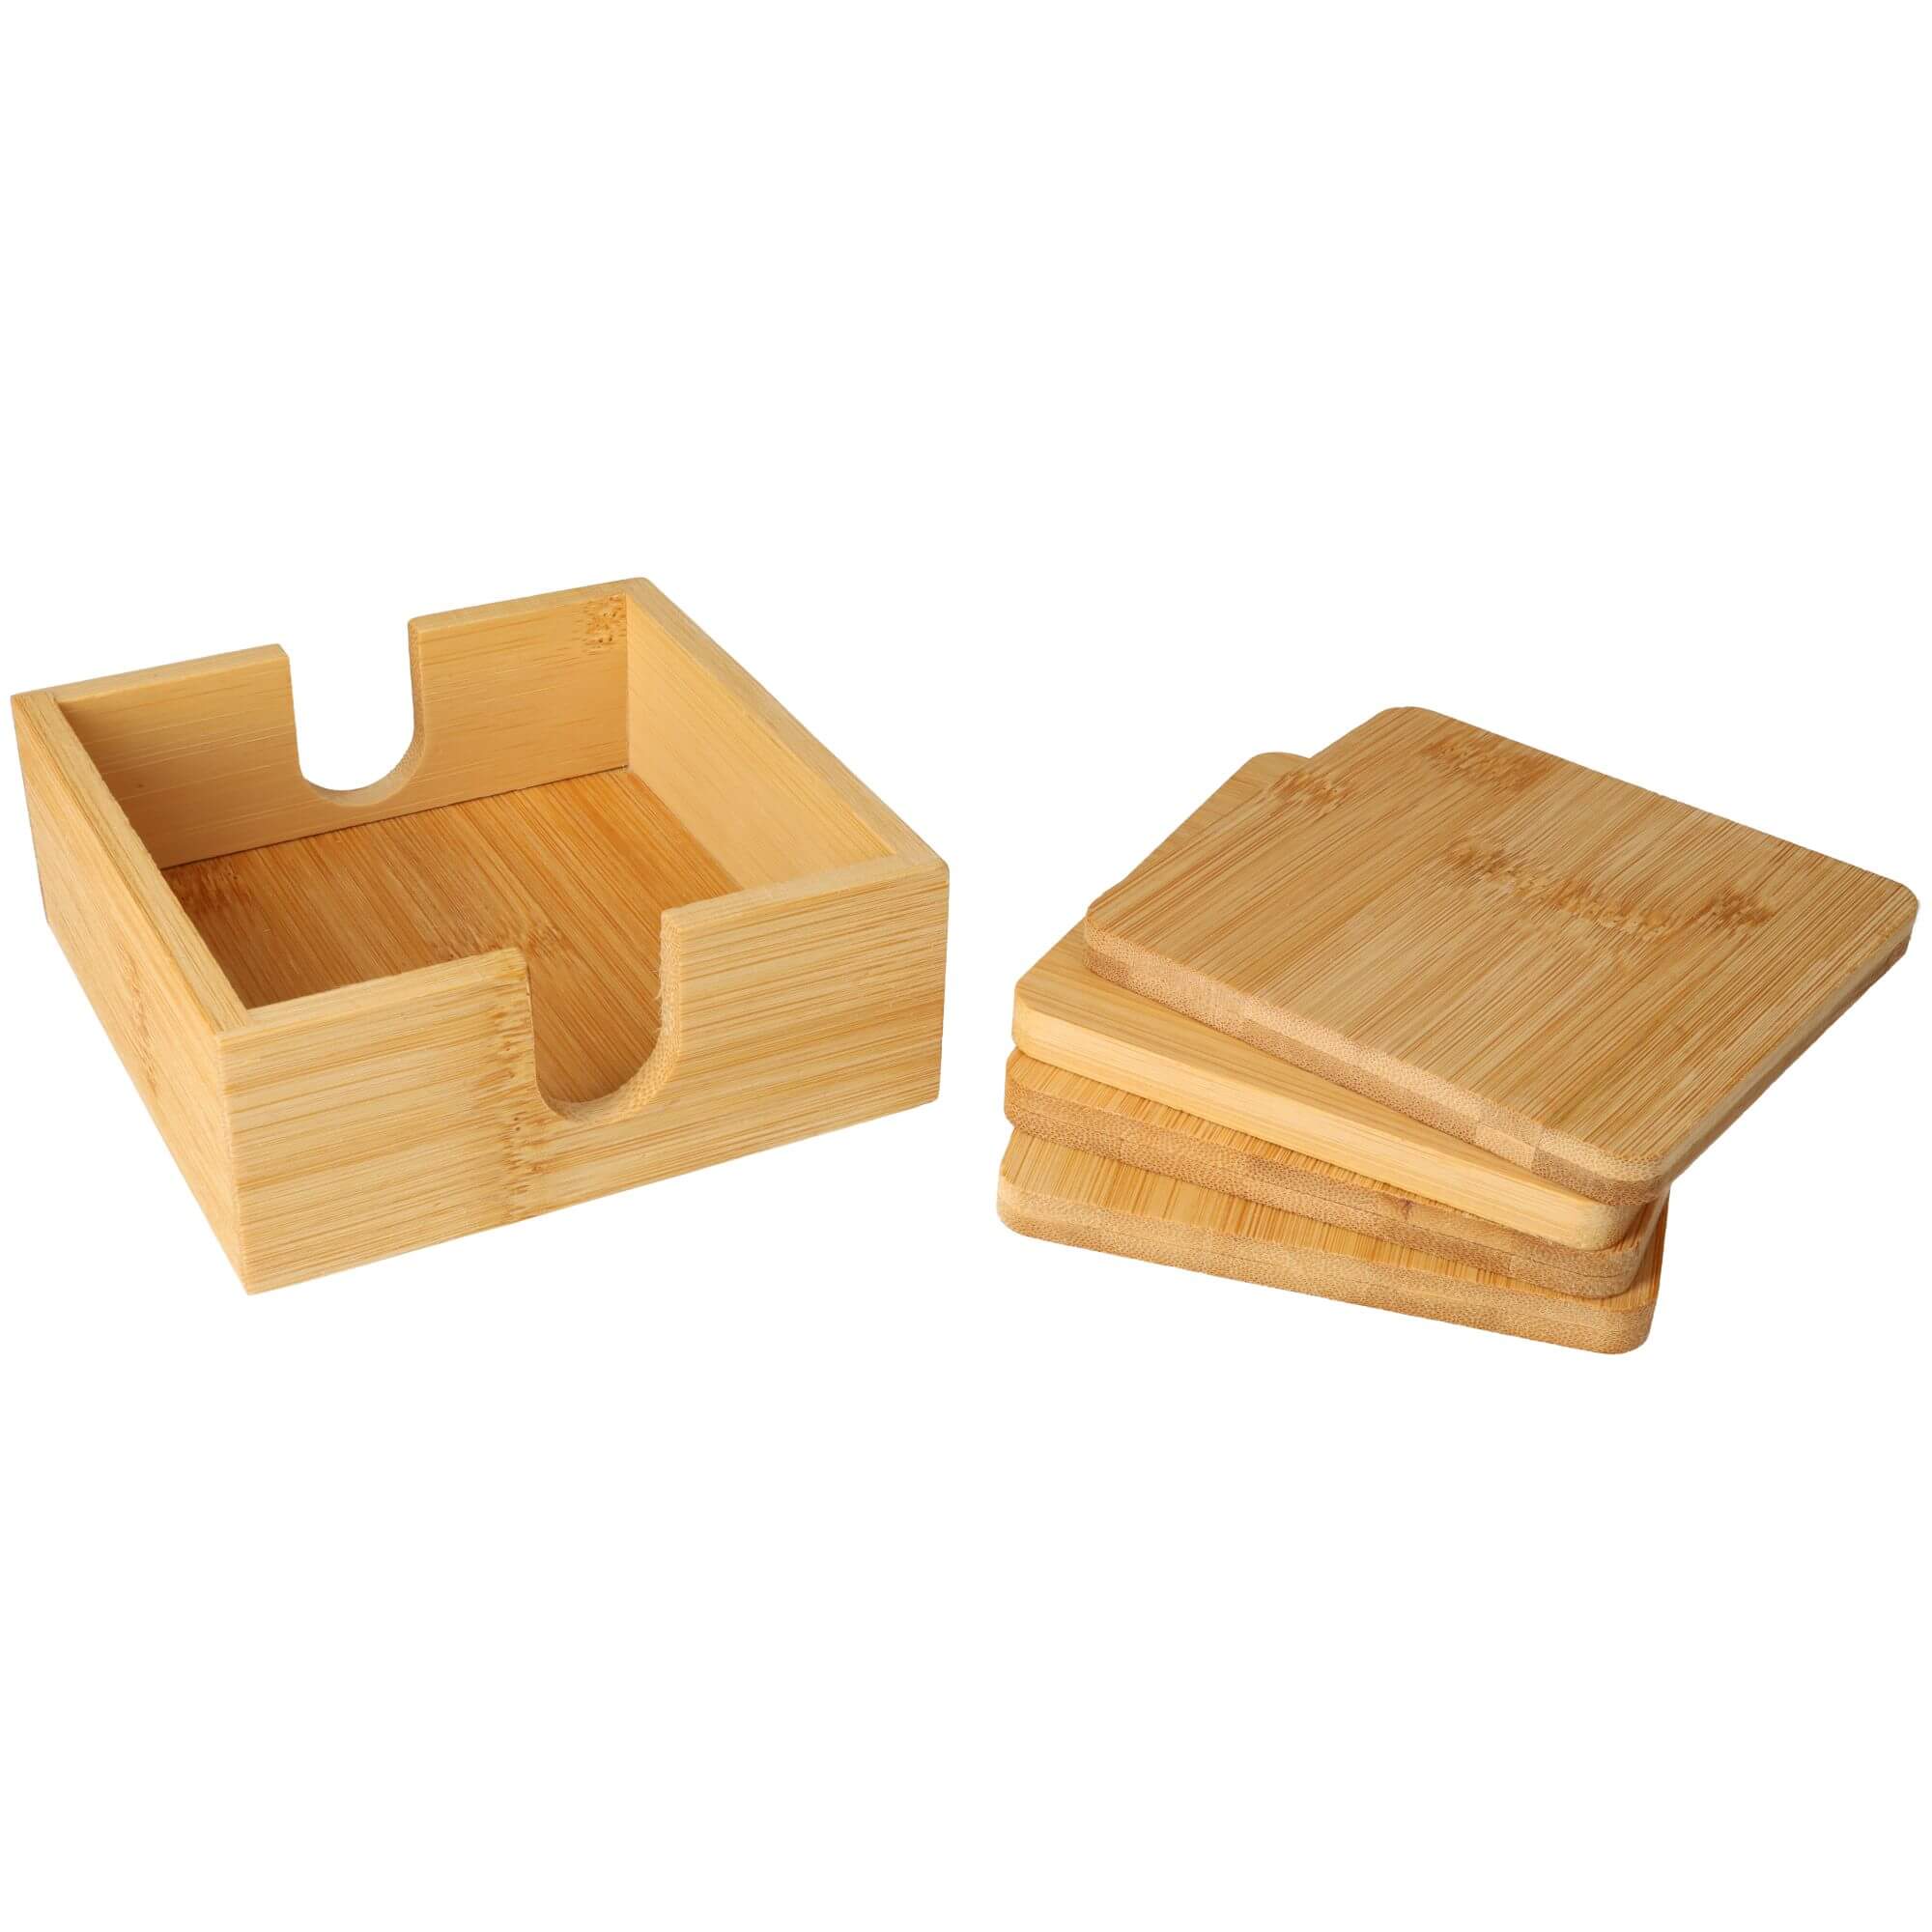 Untersetzer-Box mit 4 Untersetzern / Bierdeckeln eckig Glasuntersetzer mit Halterung aus Bambus Holz im Set (5 teilig)